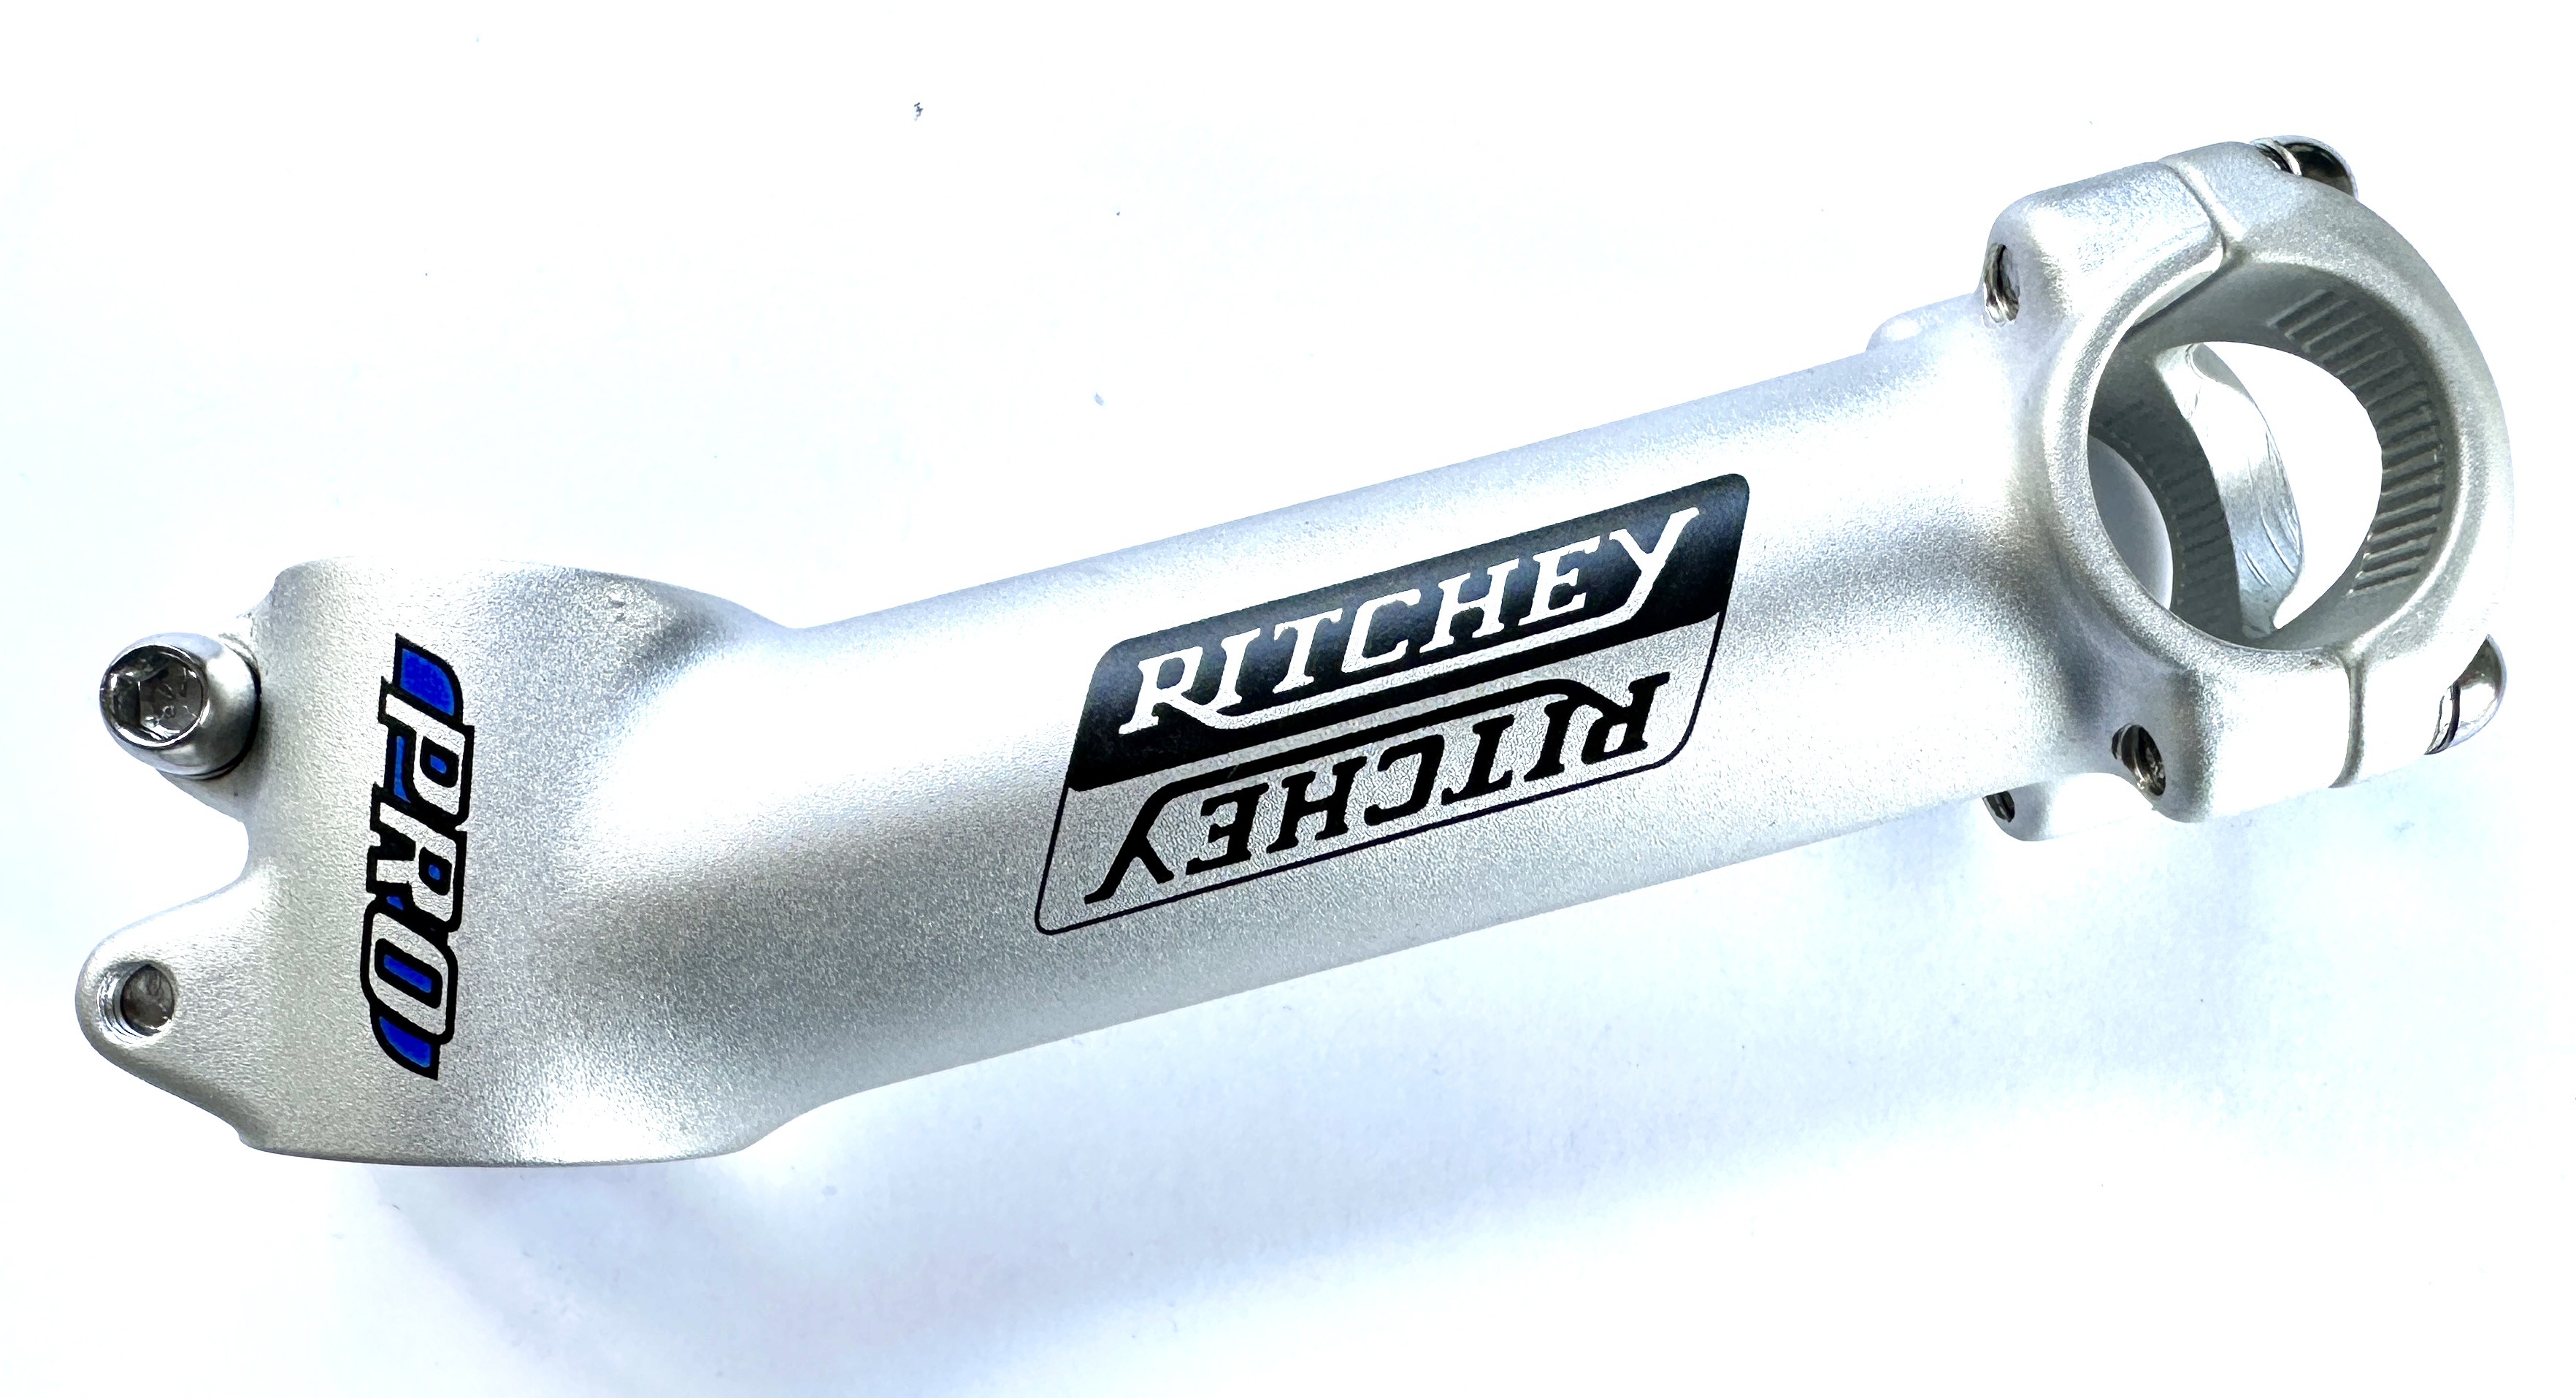  Ritchey Pro Attacco manubrio in alluminio: 1 1/8 attacco manubrio 1 pollice attacco a vite a 4 vie